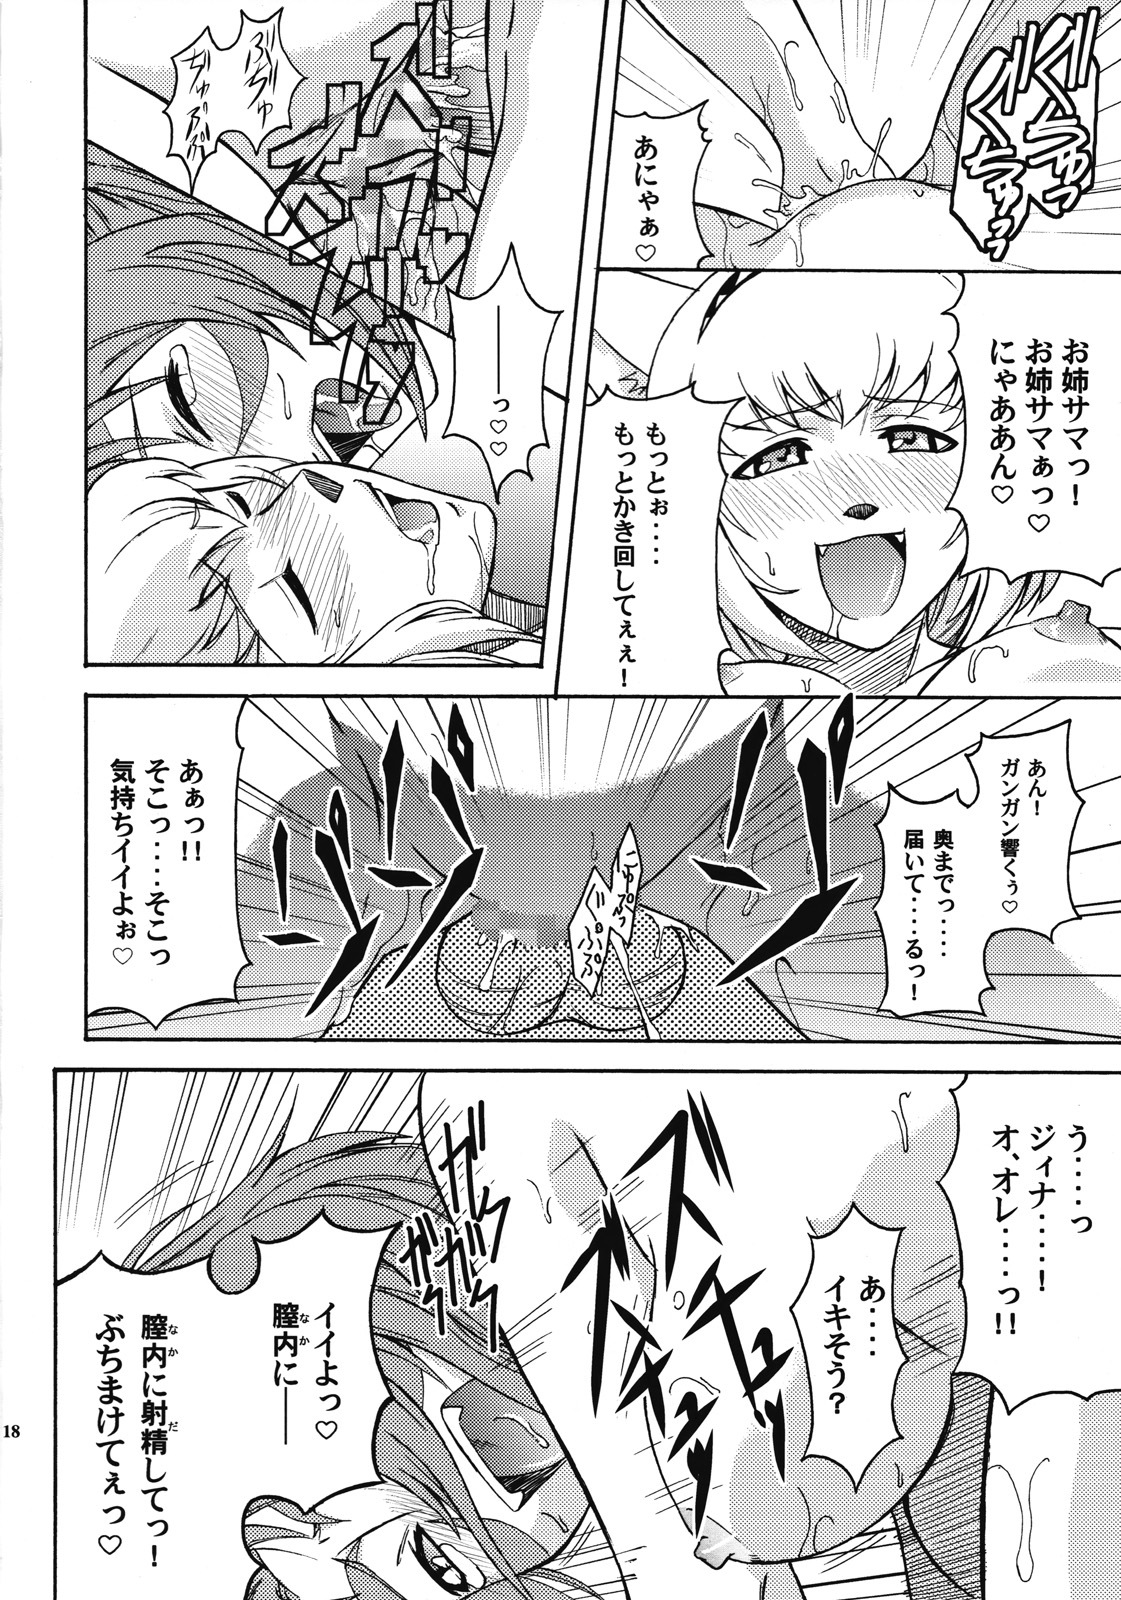 [ARCHENEMY (Kasumi Ryo)] Ein Joghurt wie ein Honig-Dessert. EXTENDED EDITION (Final Fantasy XI) page 17 full